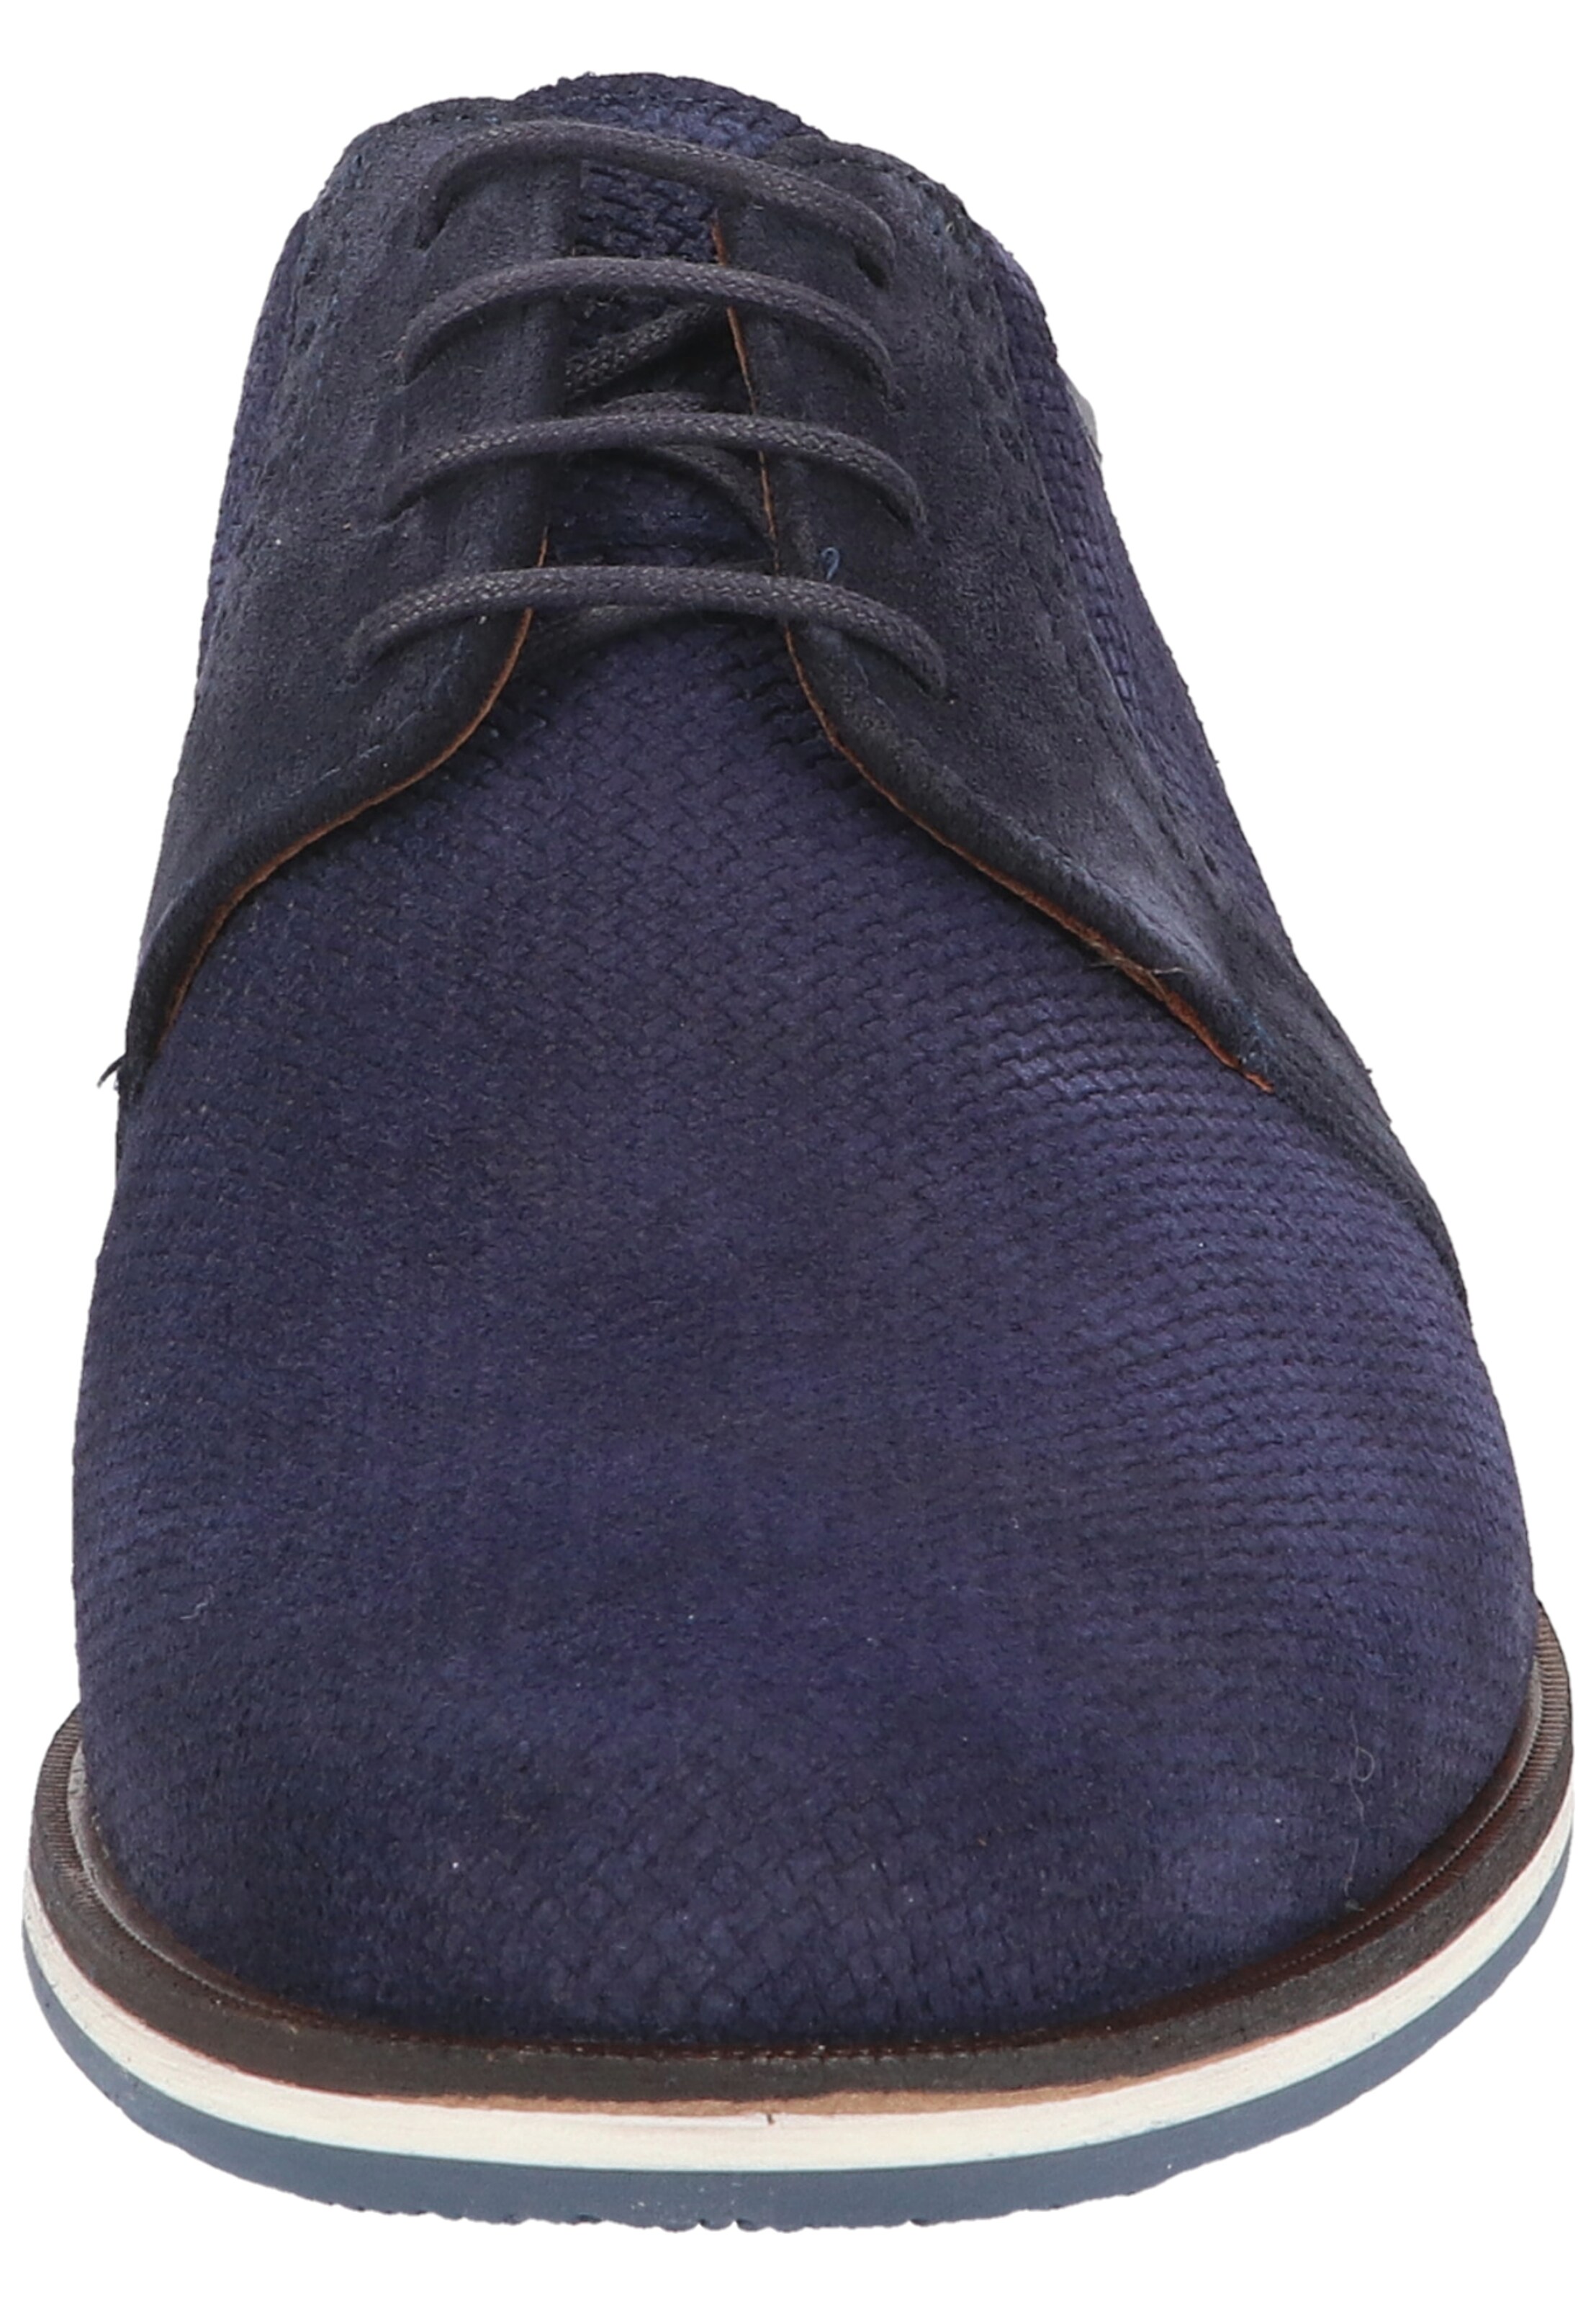 Männer Halbschuhe LLOYD Schuh in Blau - MW35168